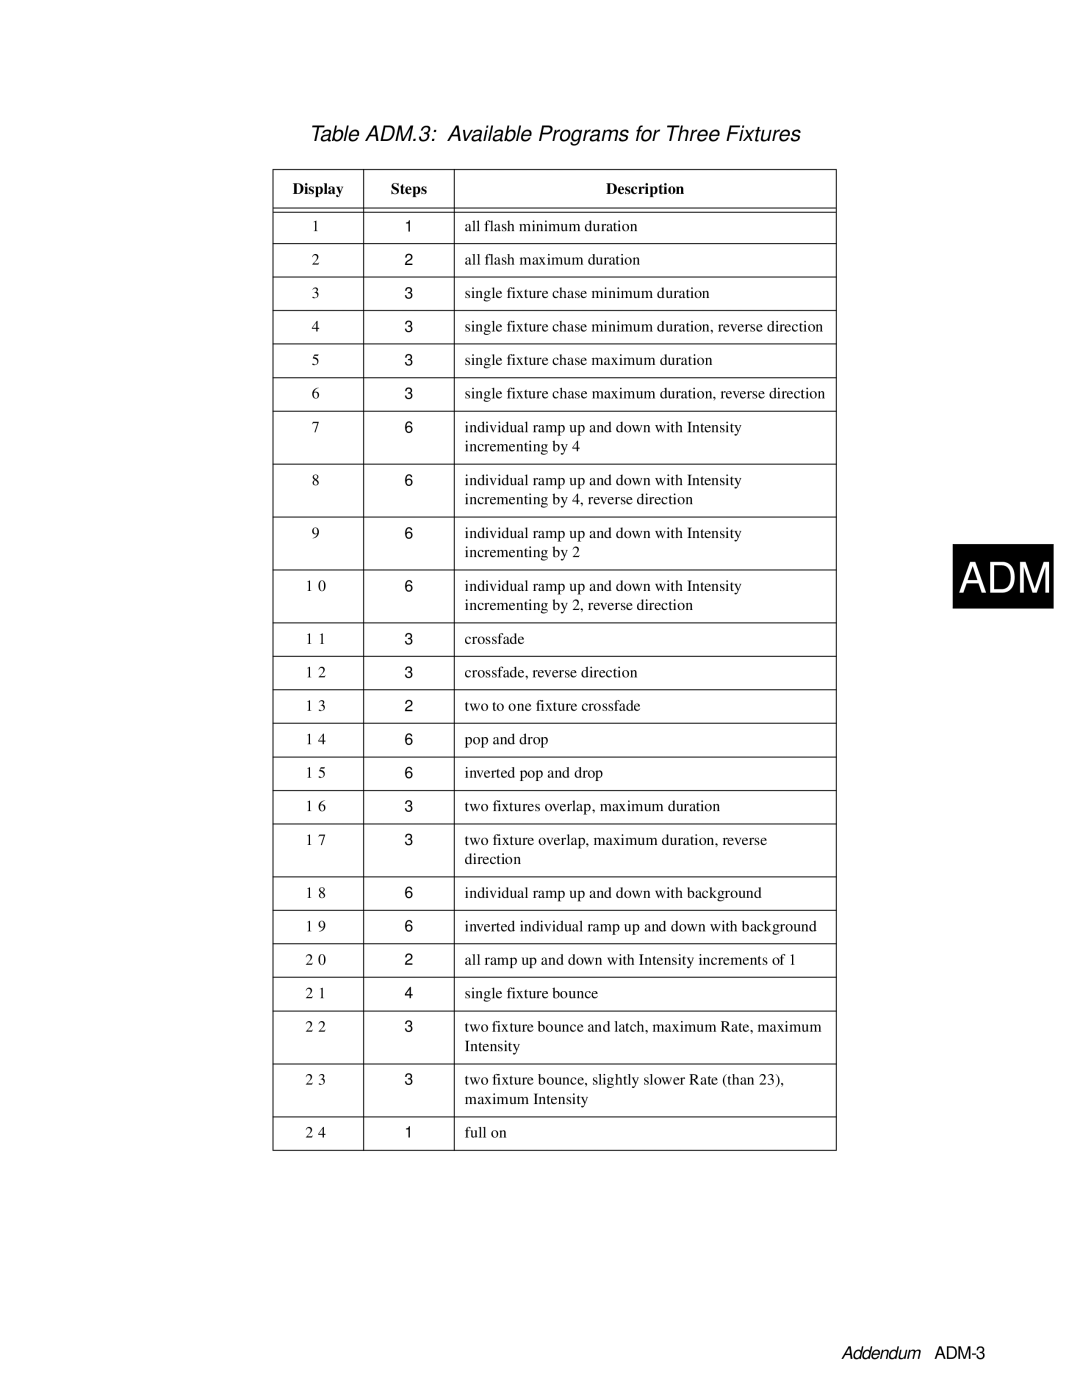 High End Systems AF1000 user manual Addendum ADM-3, Display, Steps, Description 